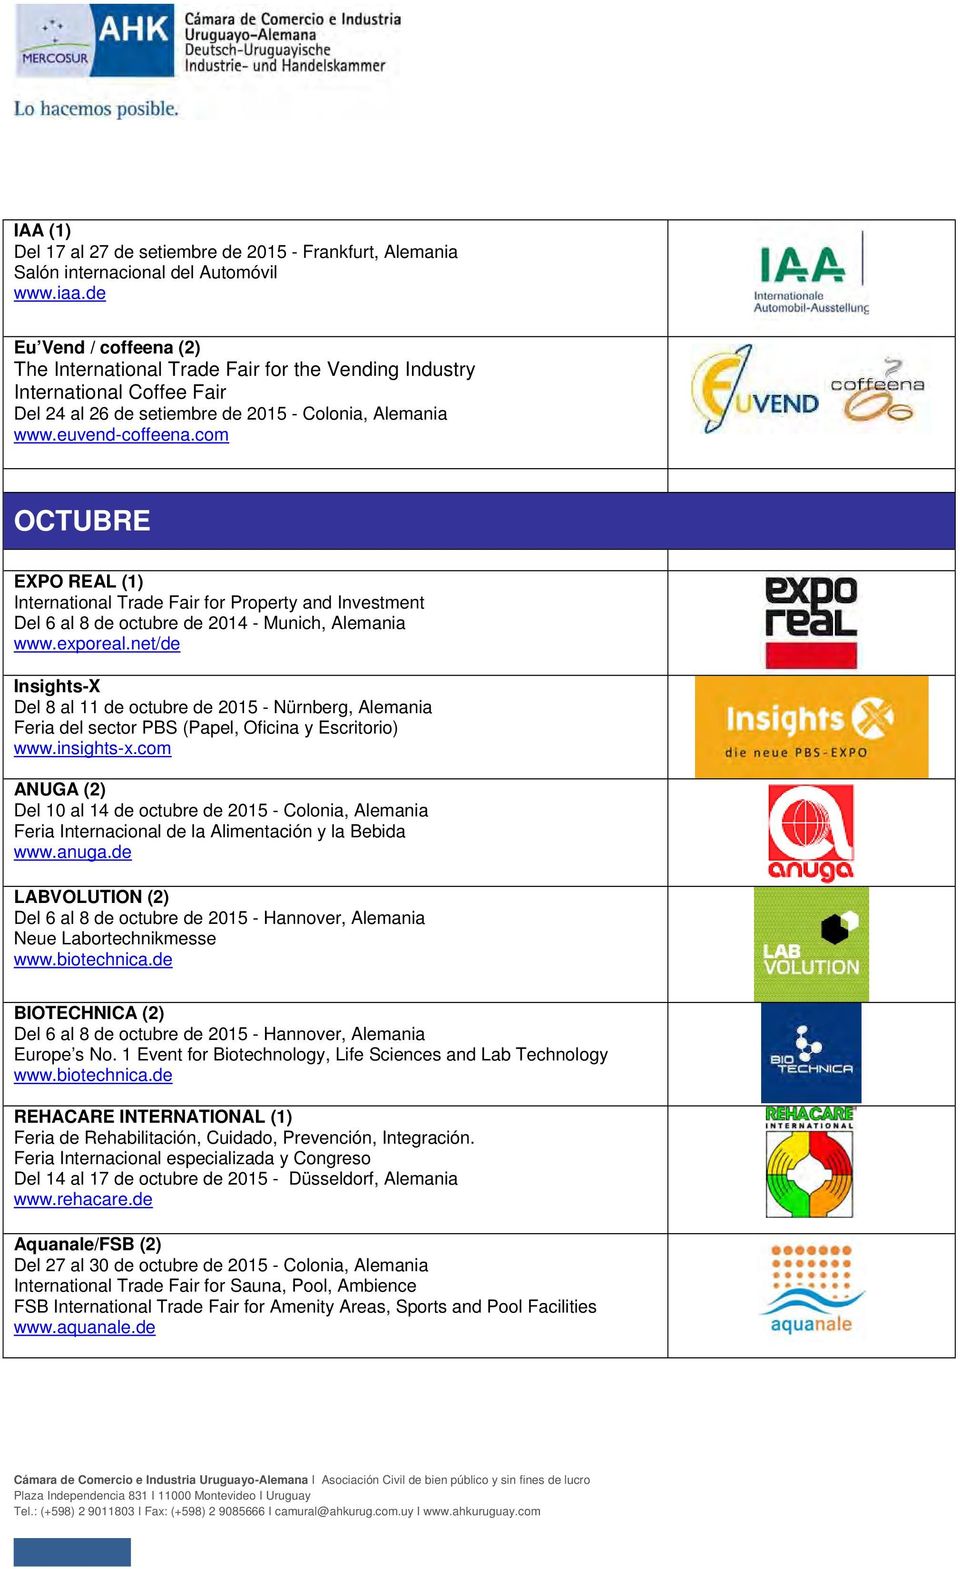 com OCTUBRE EXPO REAL (1) International Trade Fair for Property and Investment Del 6 al 8 de octubre de 2014 - Munich, Alemania www.exporeal.